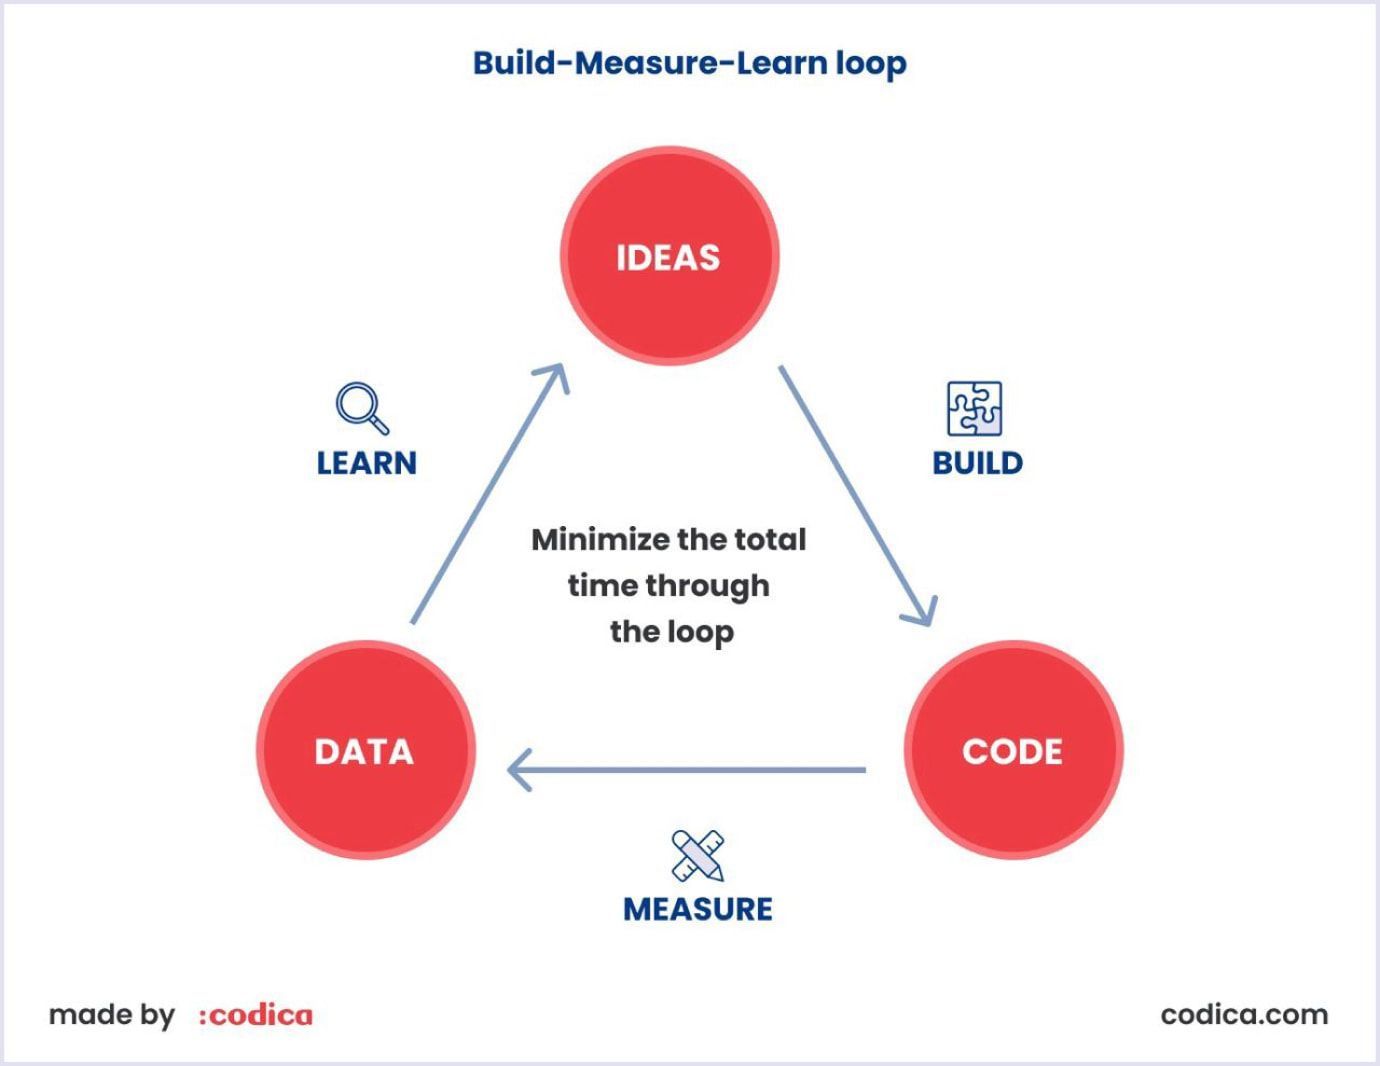 Build-Measure-Learn approach